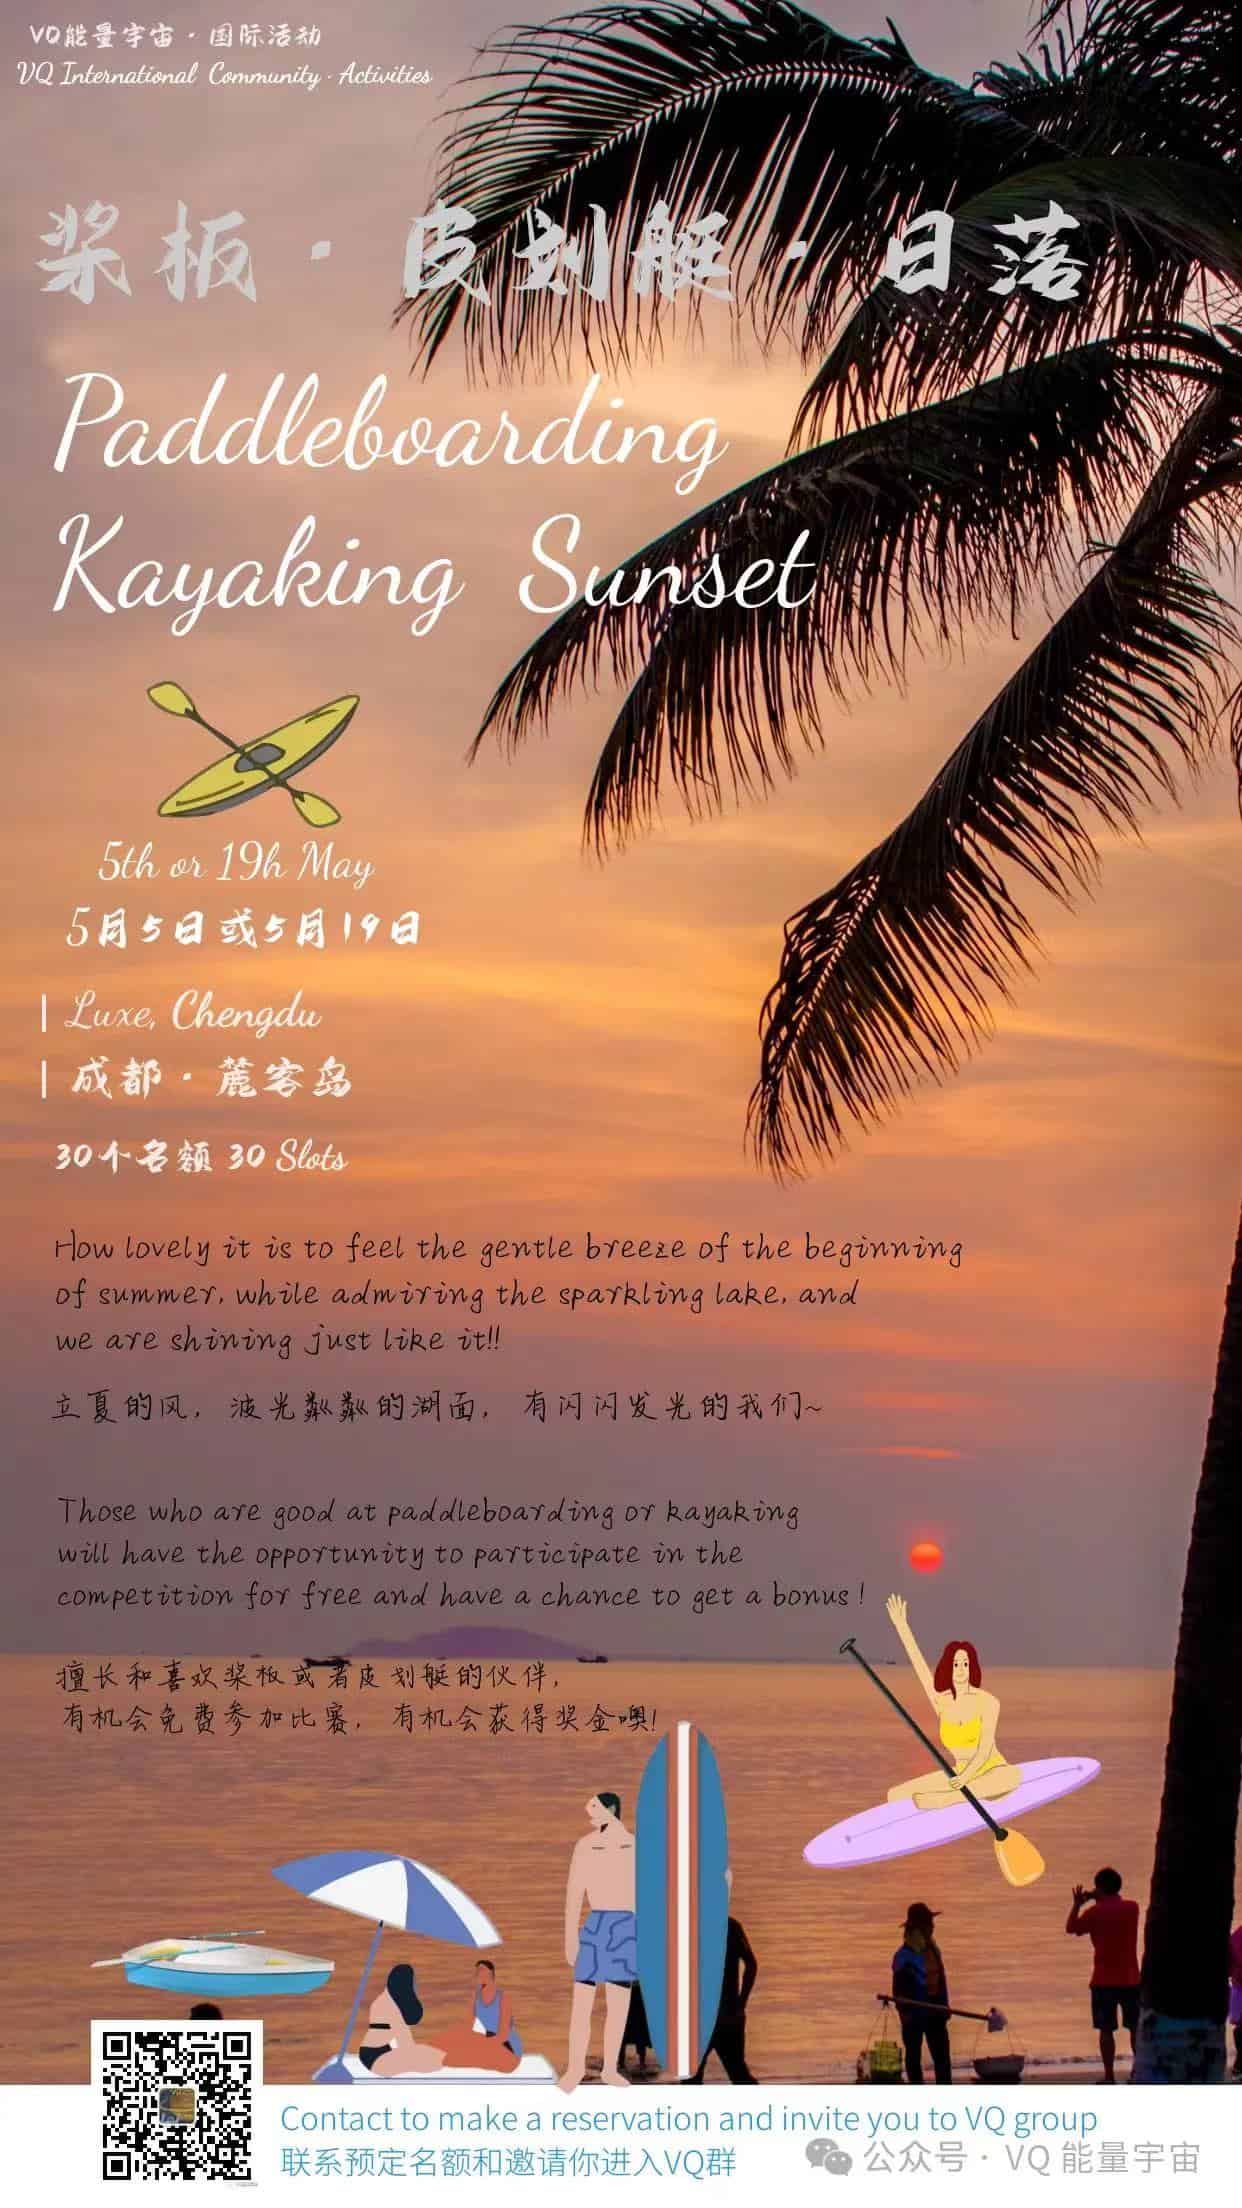 Paddleboarding Kayaking chengdu chengdu expat 1